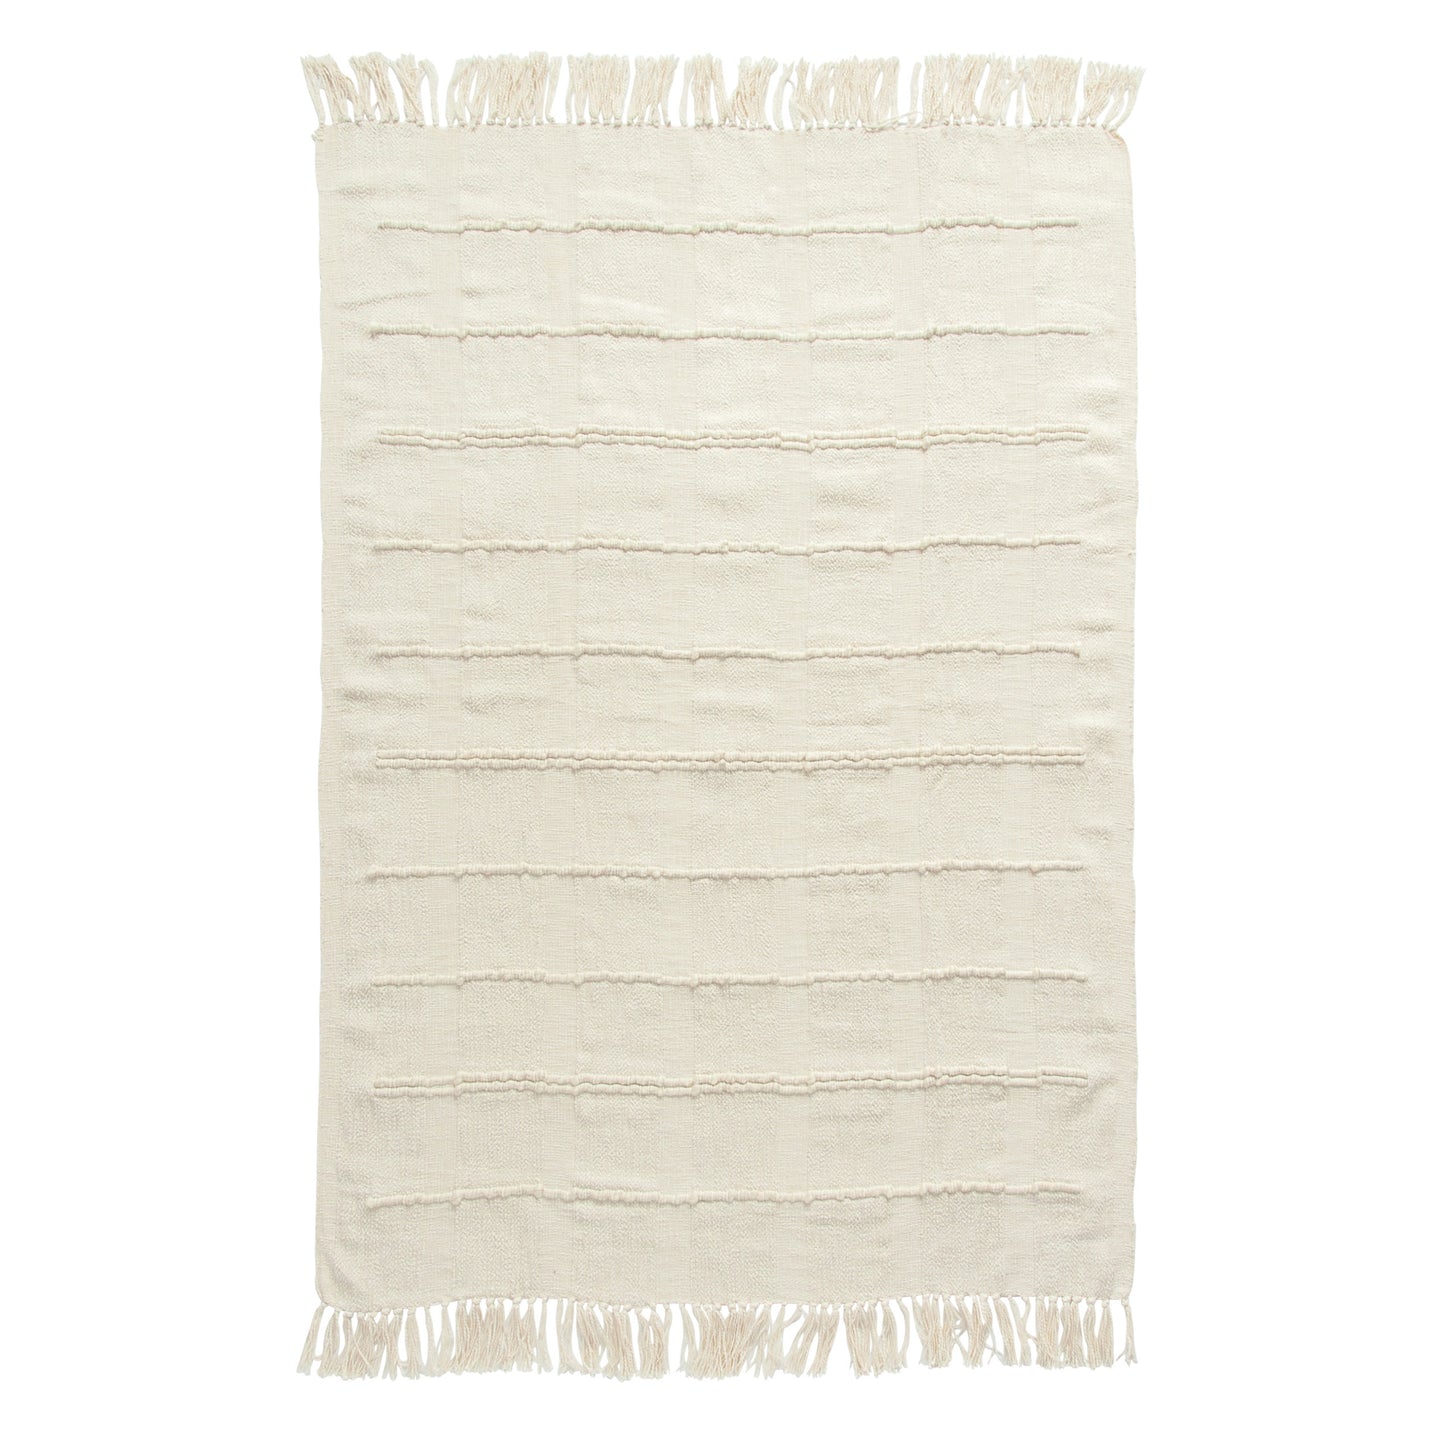 Blanket - Cotton Blend Chenille Throw